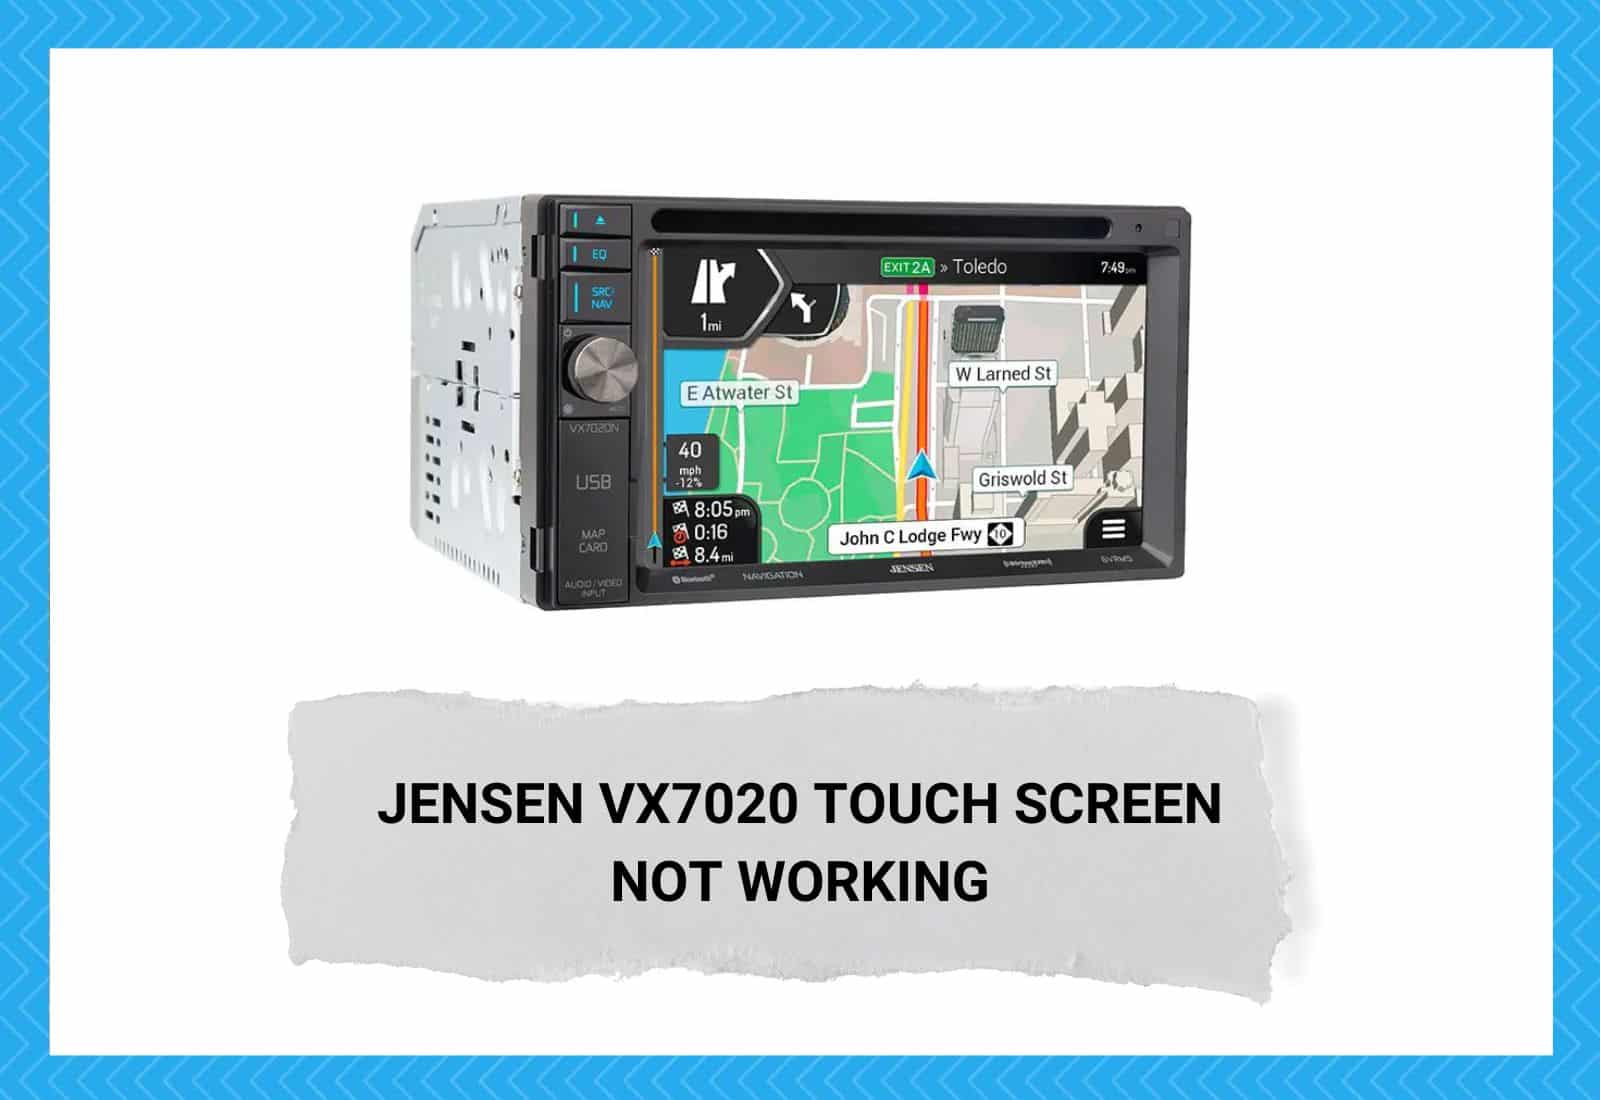 Jensen VX7020 Touch Screen Not Working